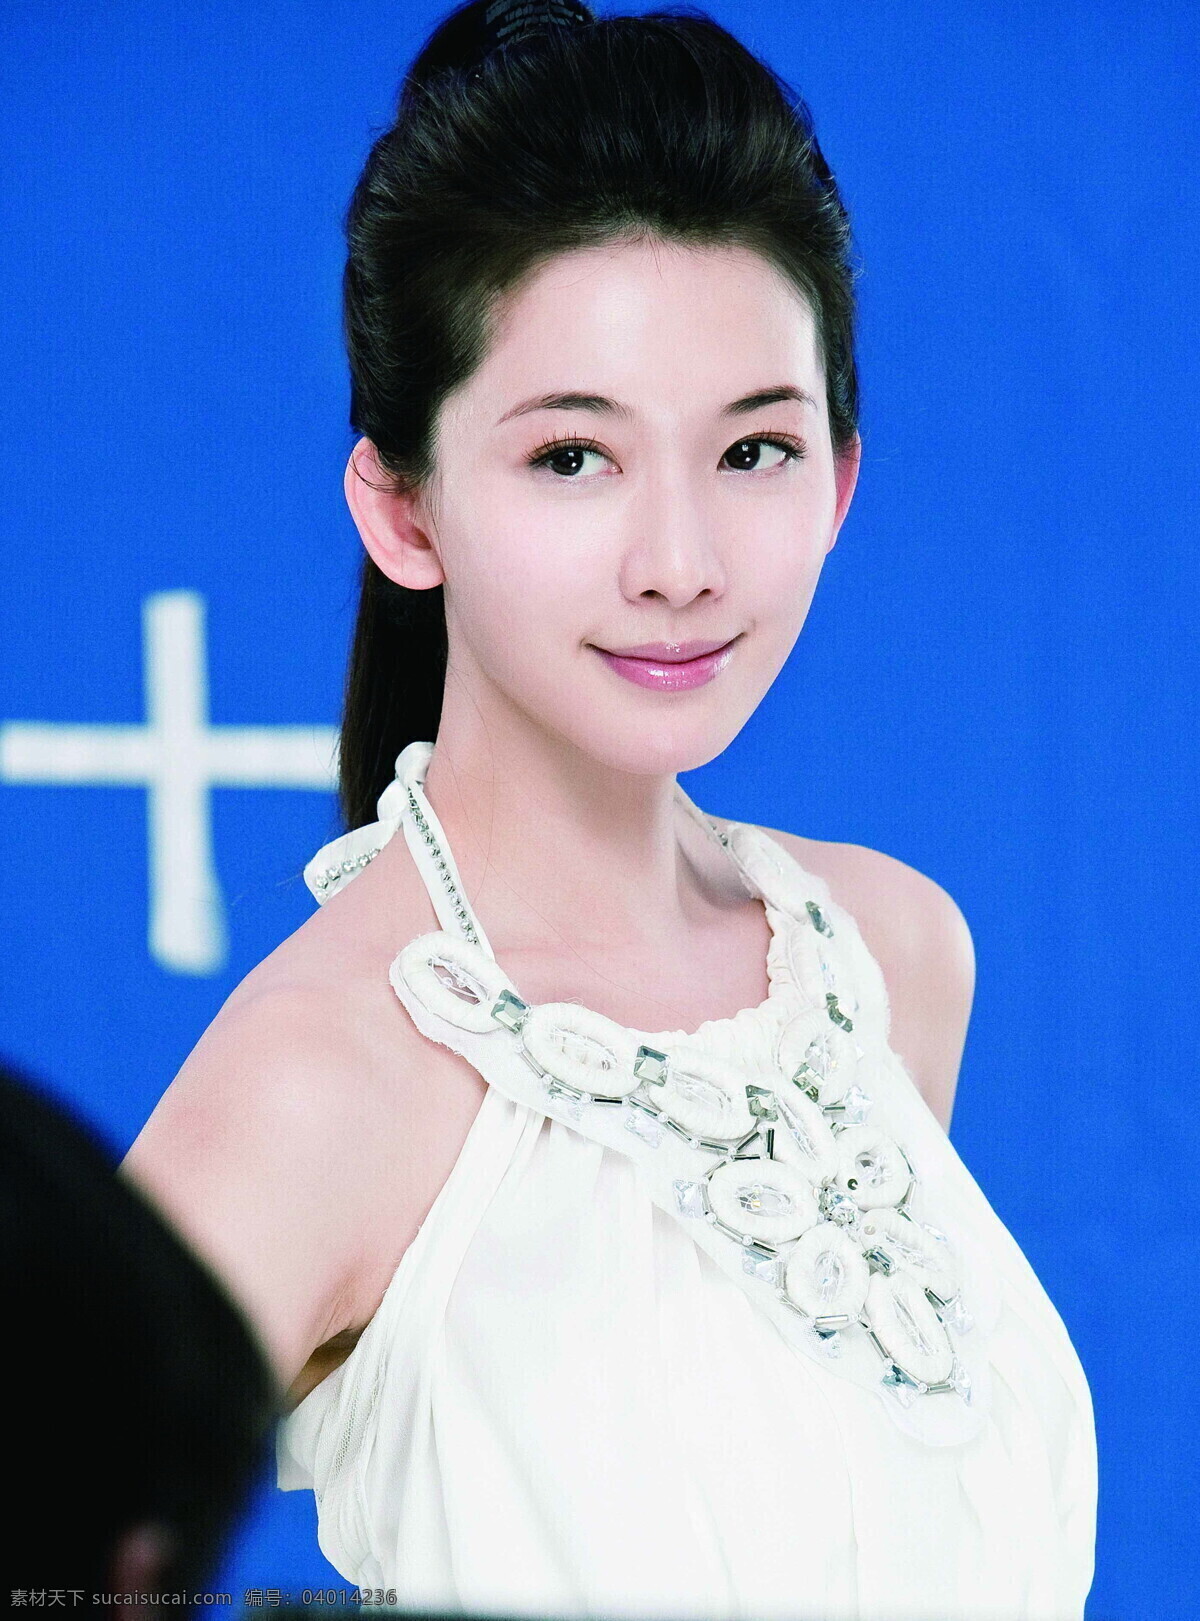 林志玲 台湾名模 偶像明星 主持人 演员 美女 明星偶像 人物图库